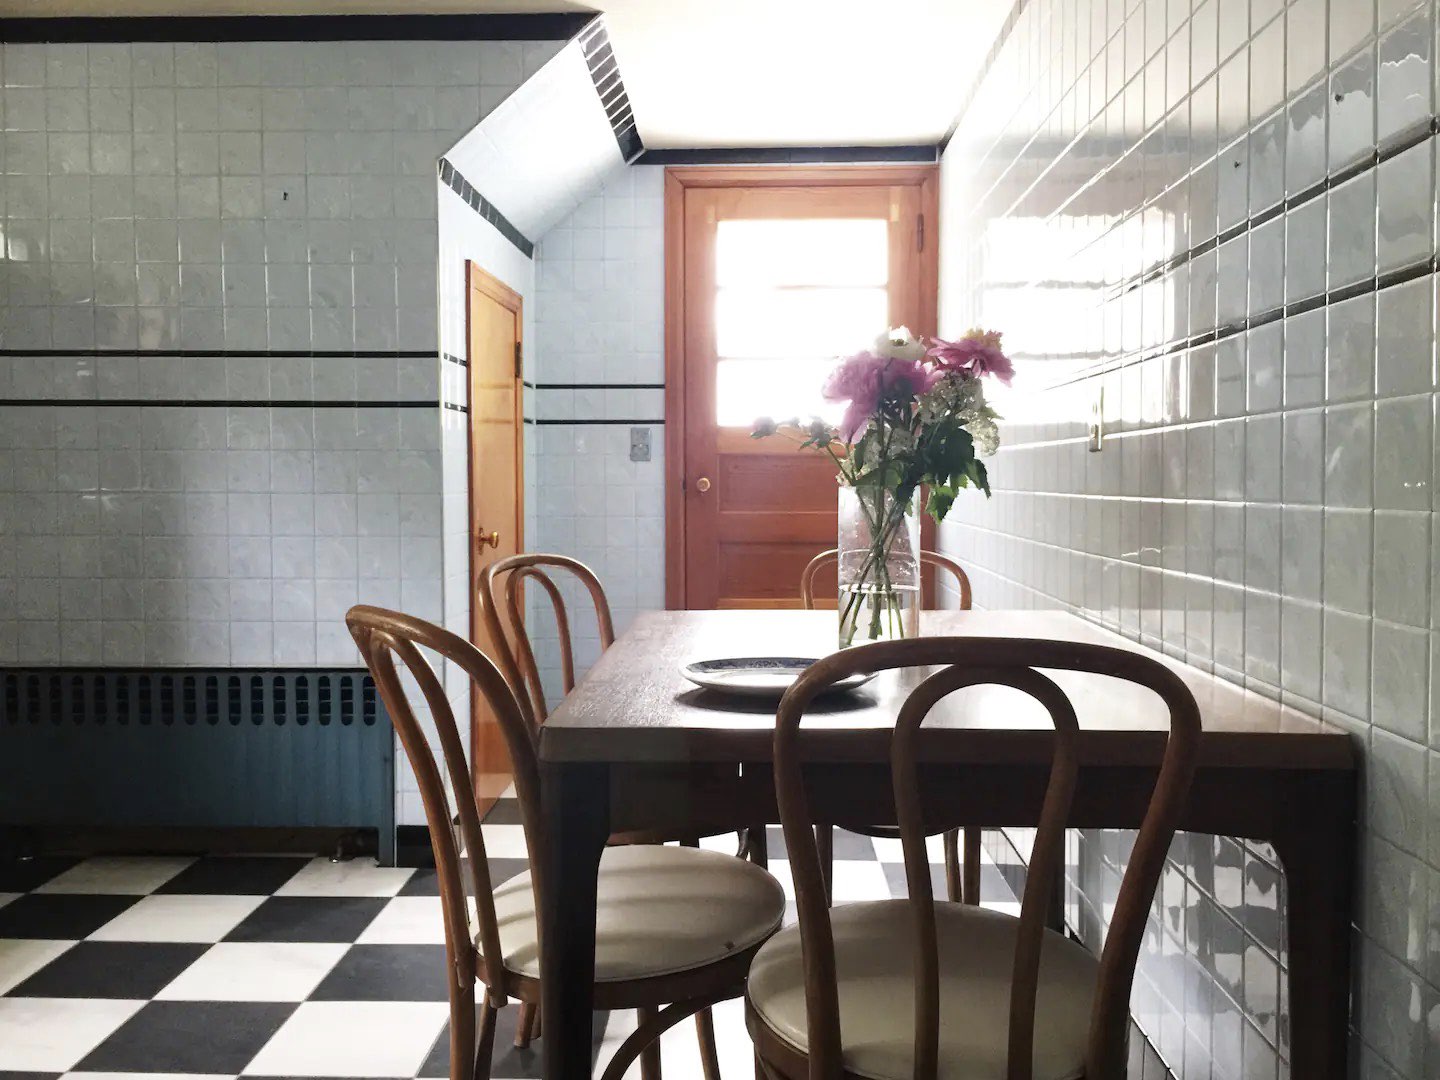 visite deco appartement mid century modern porte vitrée peinte en rouge terracotta vintage cuisine table rectangulaire chaise design Thonet